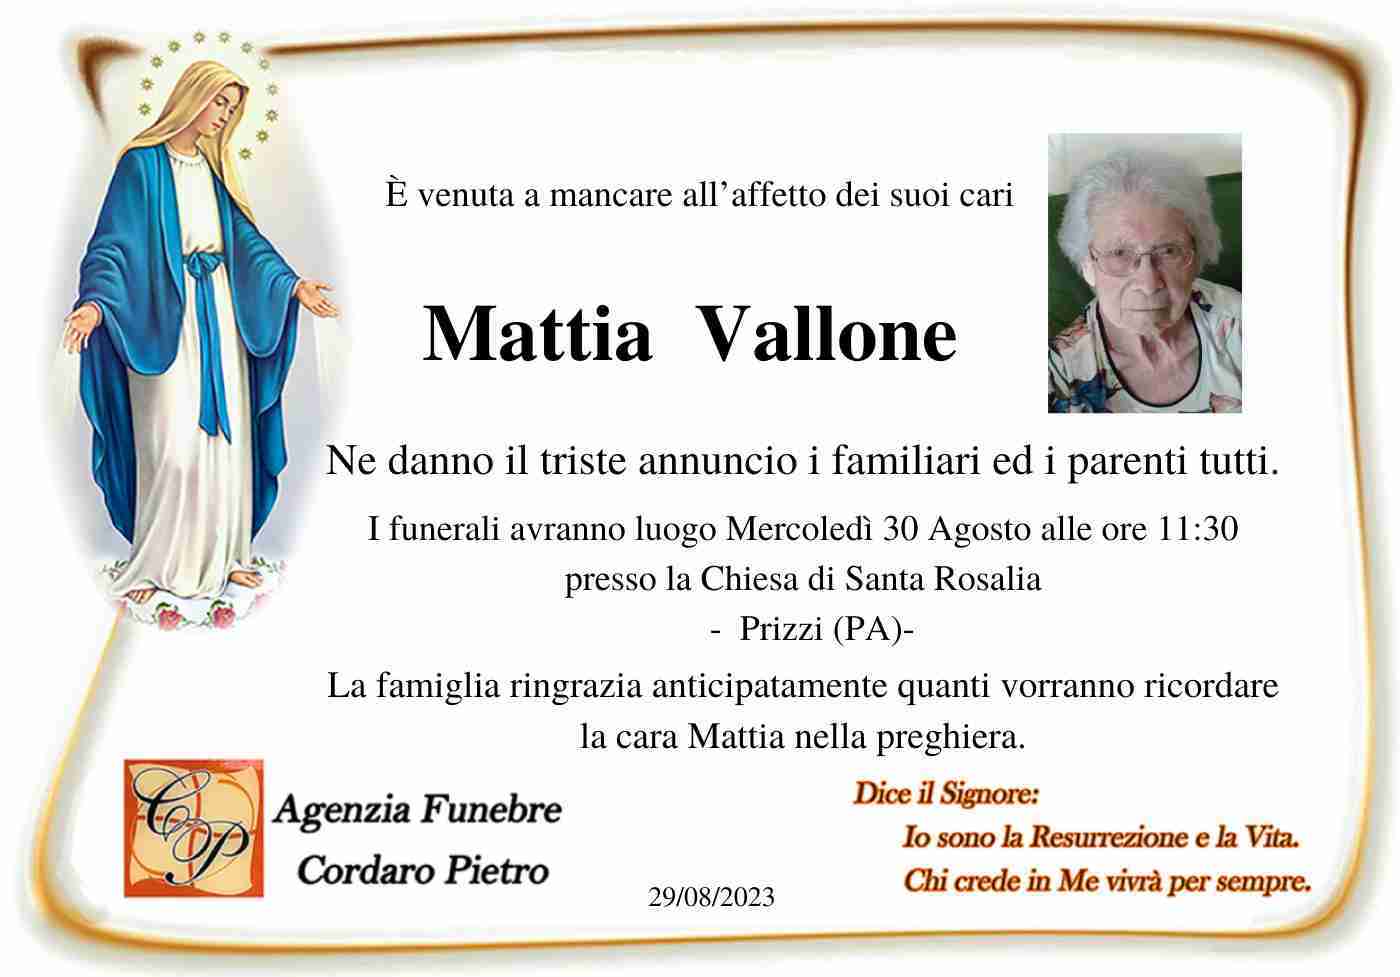 Mattia Vallone